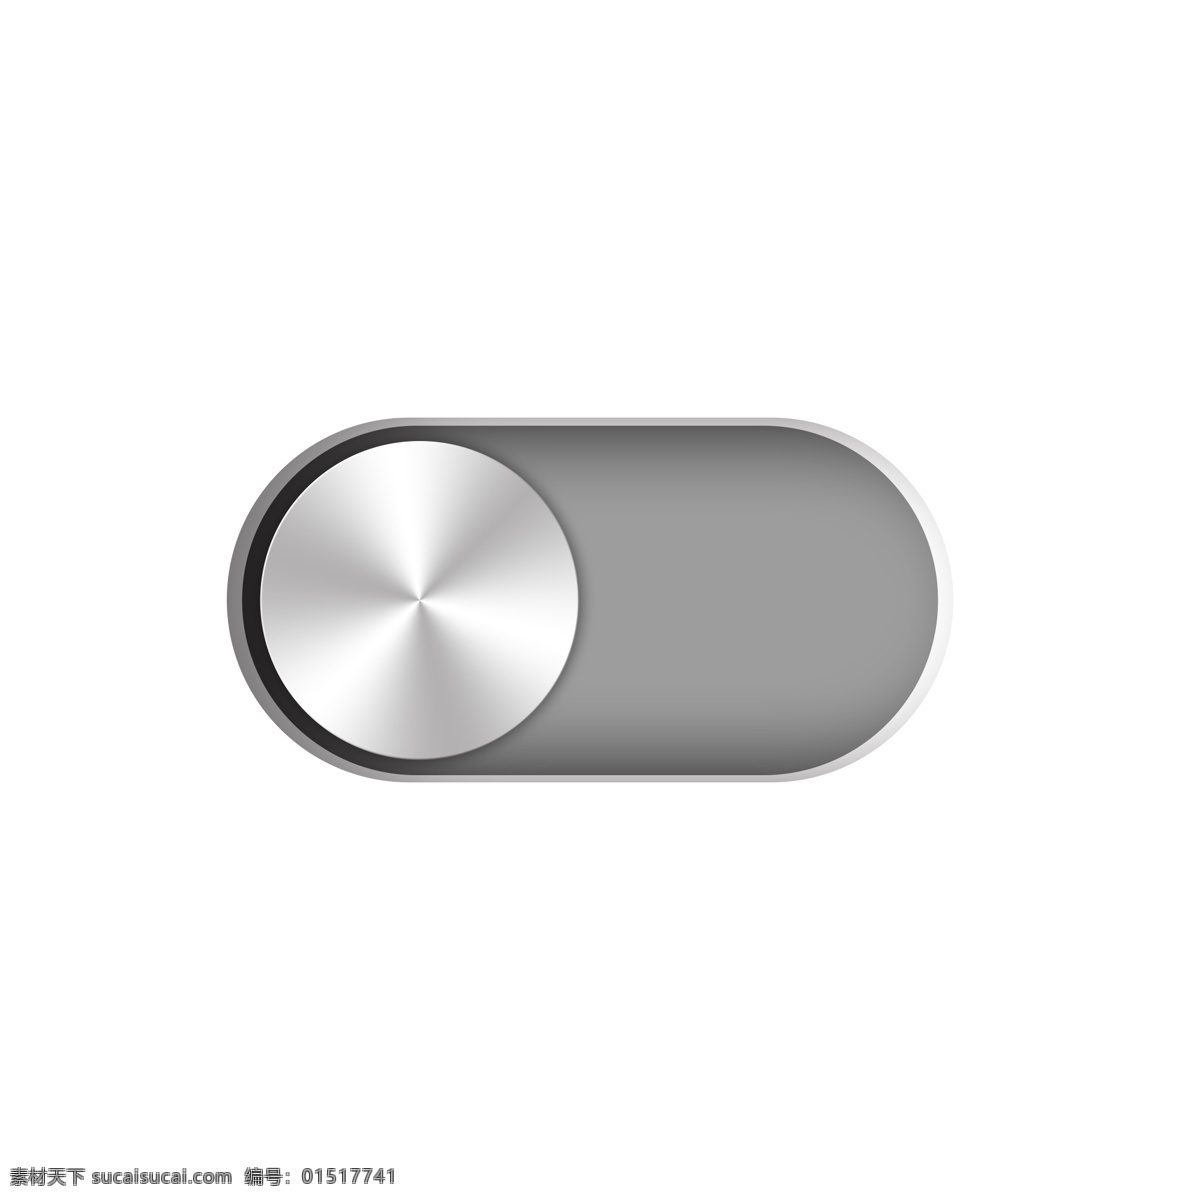 手绘 金属 质感 按钮 手机 界面设计 元素 金属质感 界面 设计元素 可商用 装饰